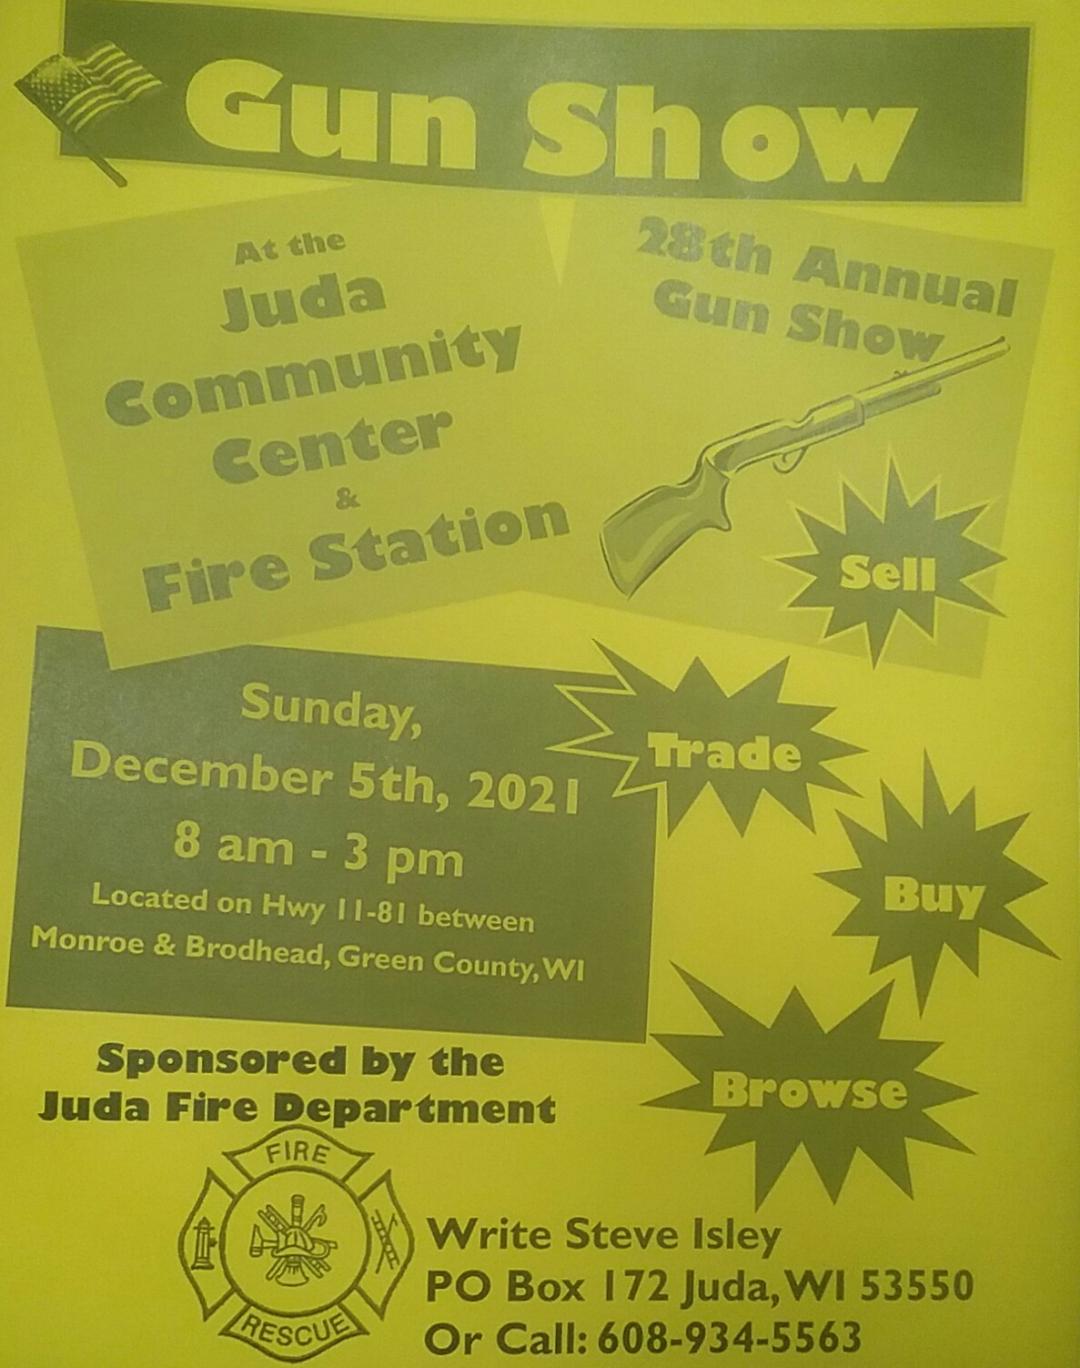 28th Annual Gun Show by the Juda Fire Department